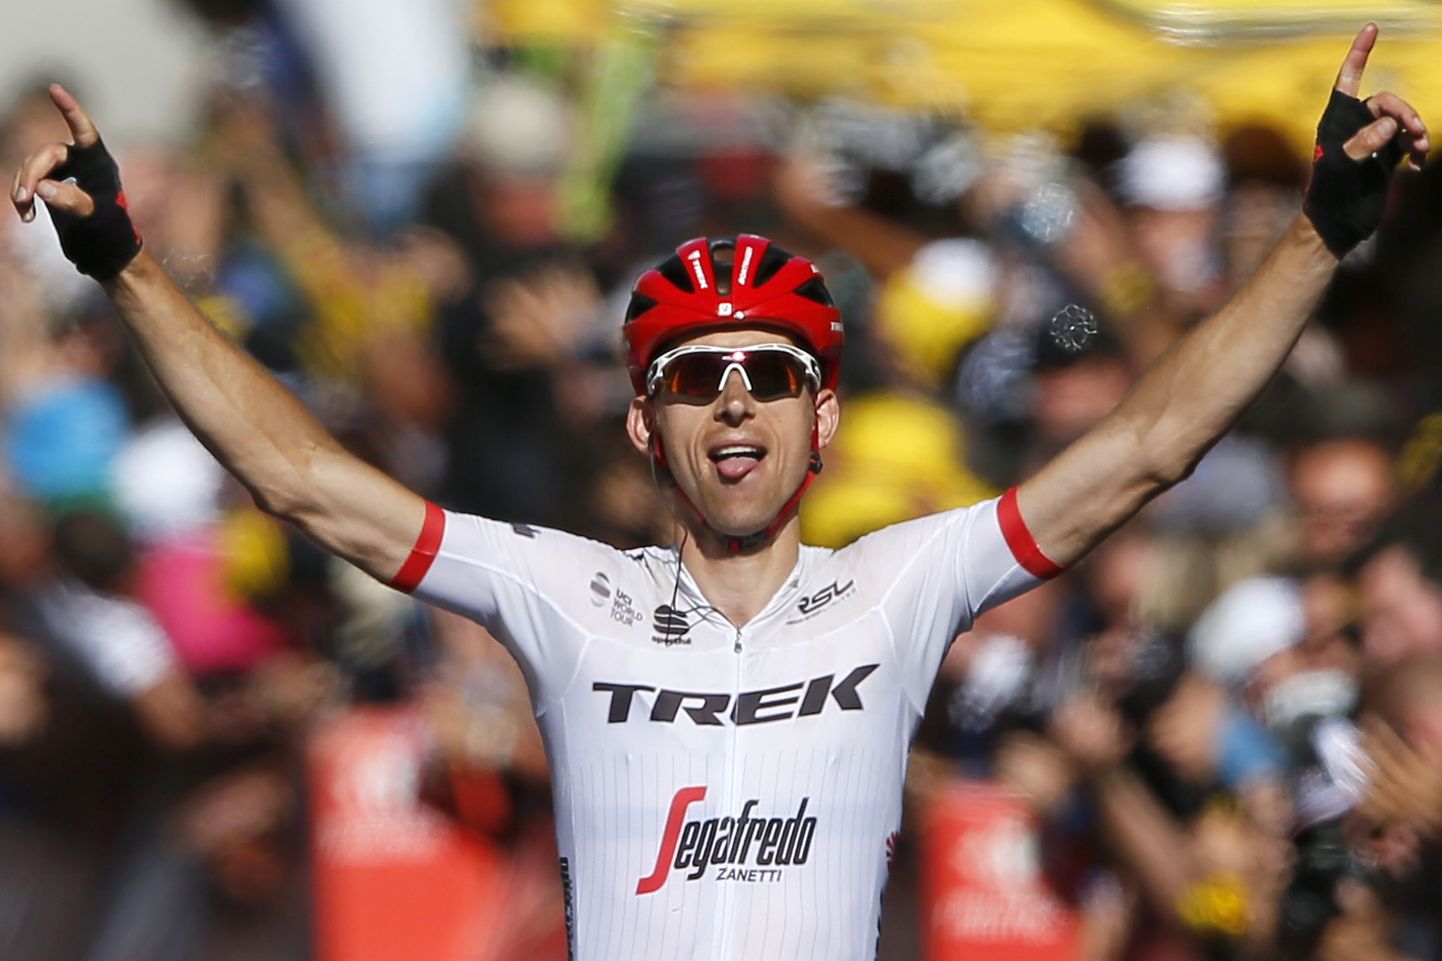 Bauke Mollema tähistamas oma karjääri esimest võitu Tour de France'il.